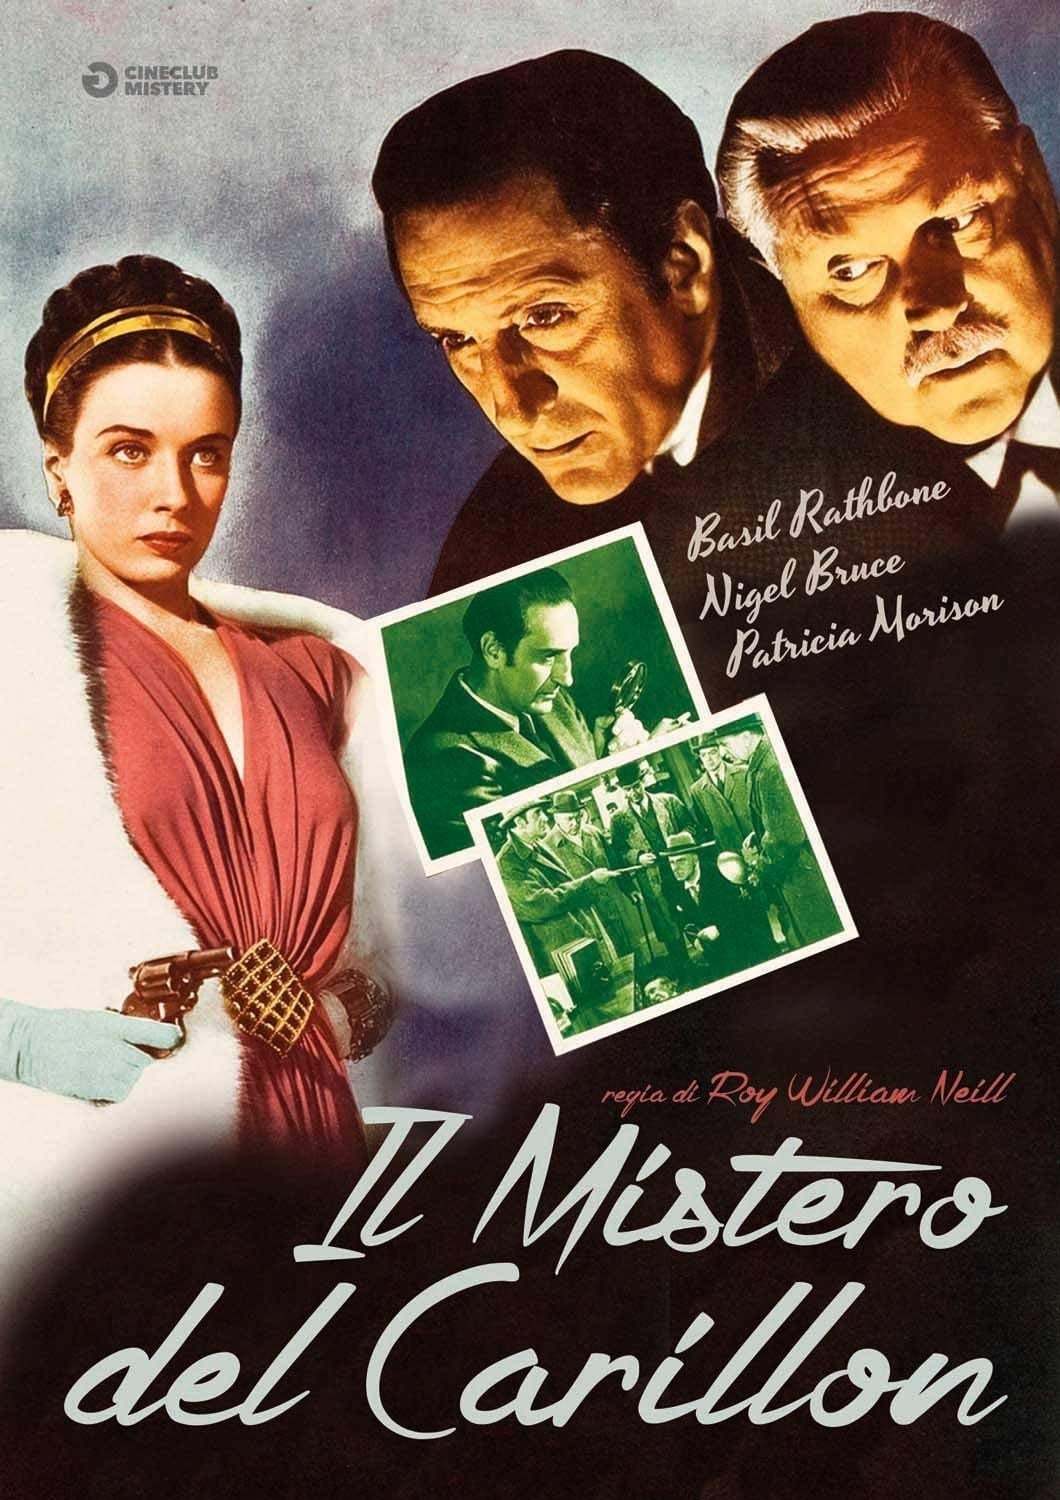 Sherlock Holmes e il mistero del carillon [B/N] [HD] (1946)﻿